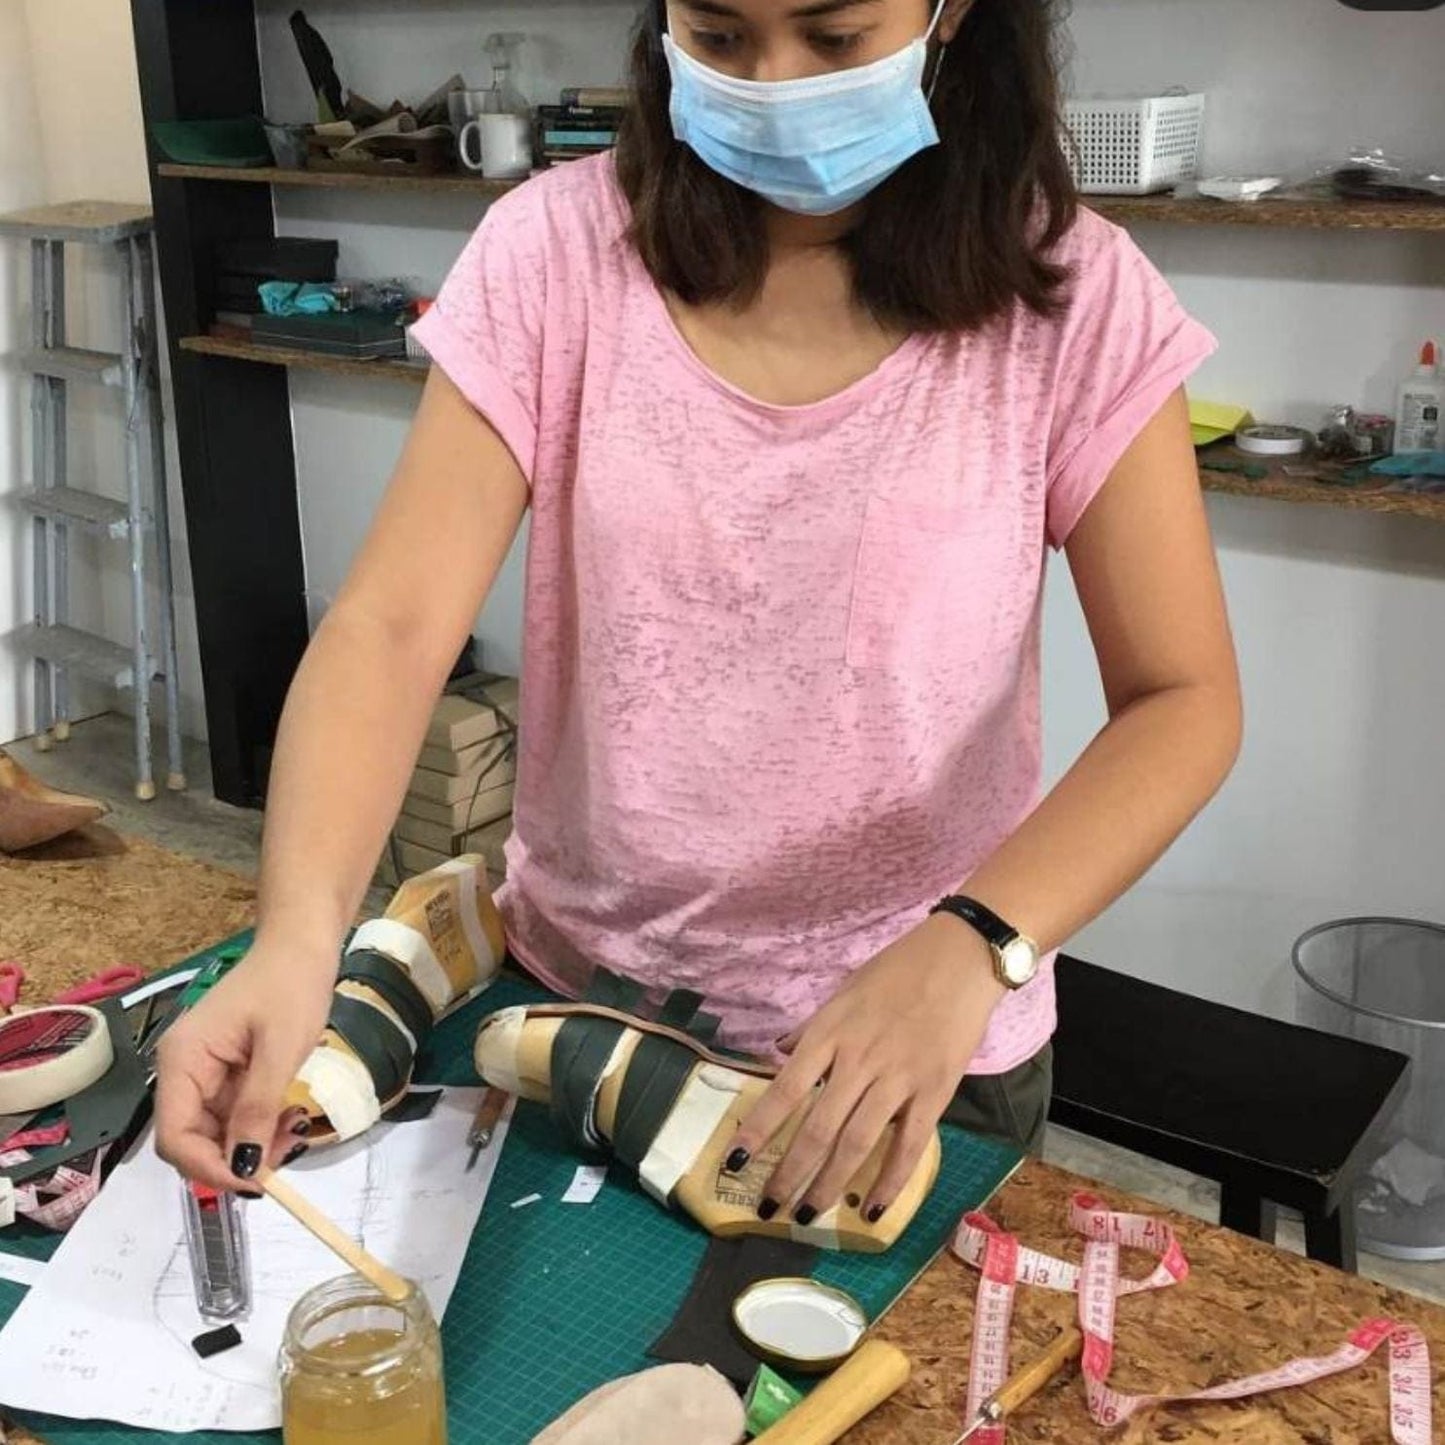 Sandal-making workshop